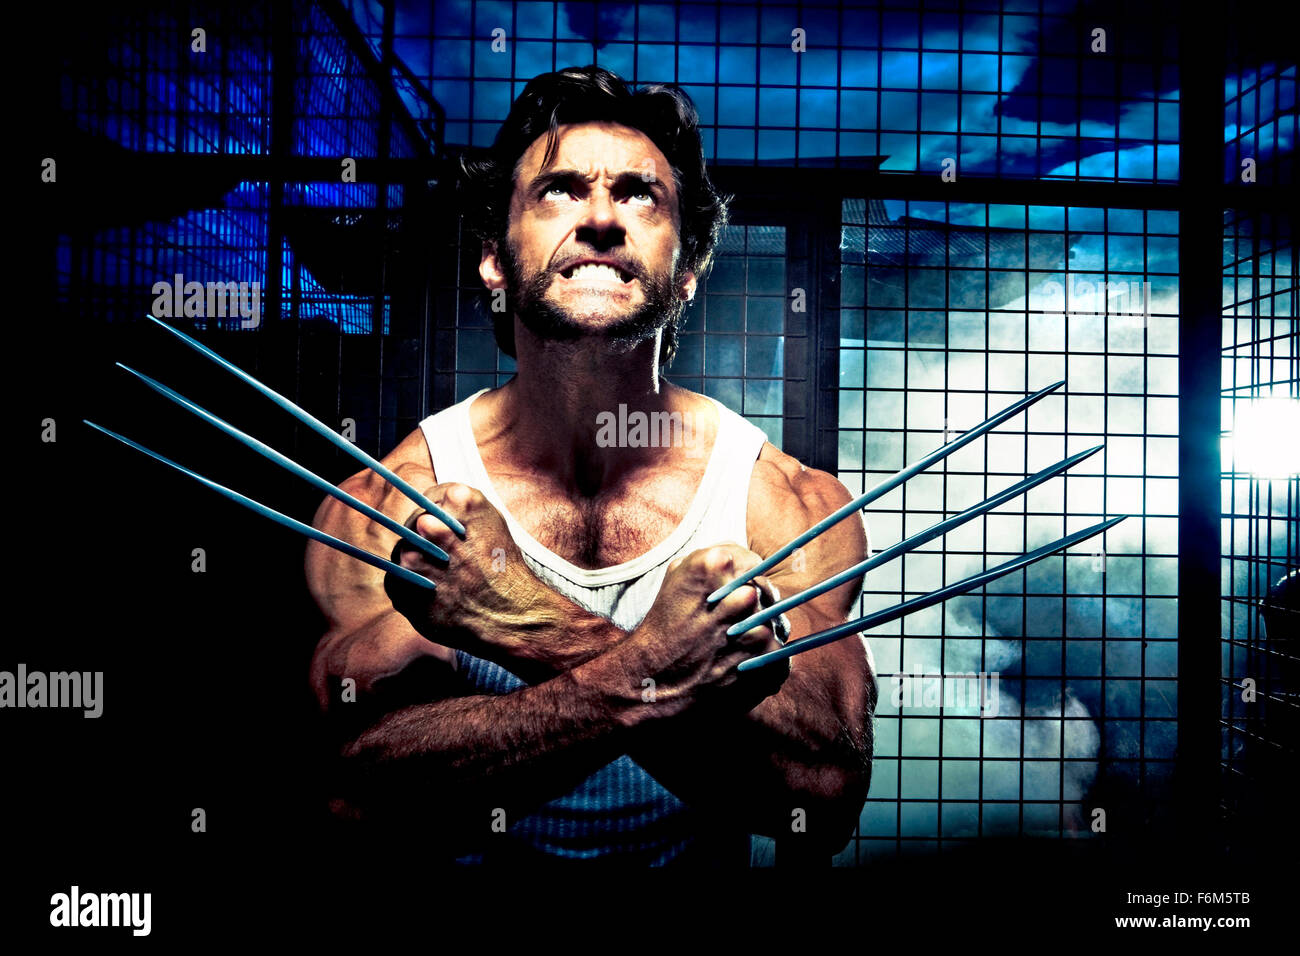 Data di rilascio: maggio 01, 2009. Il titolo del filmato: X-Men Origins: Wolverine. STUDIO: la meraviglia delle imprese. Trama: Wolverine vive una vita mutante, cerca la vendetta contro Victor Creed (che diventerà poi Sabertooth) per la morte della sua fidanzata e infine finisce per andare attraverso il mutante Arma X programma. Nella foto: Hugh Jackman come Logan / Wolverine. Foto Stock